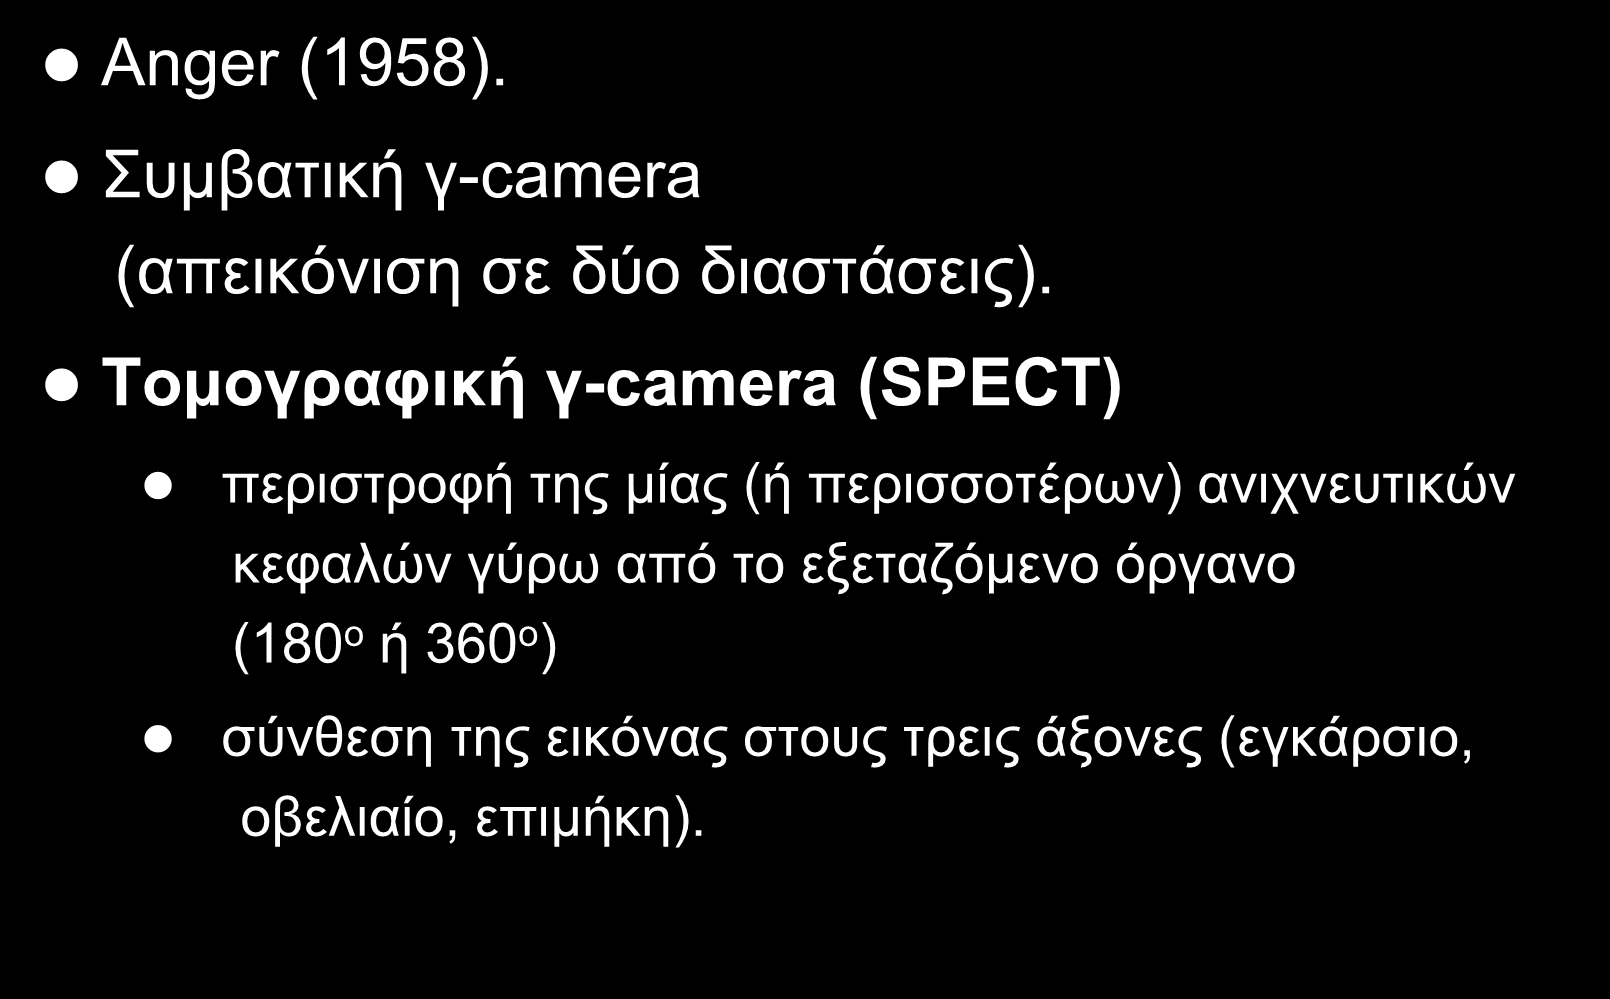 γ-camera Anger (1958). Συμβατική γ-camera (απεικόνιση σε δύο διαστάσεις).